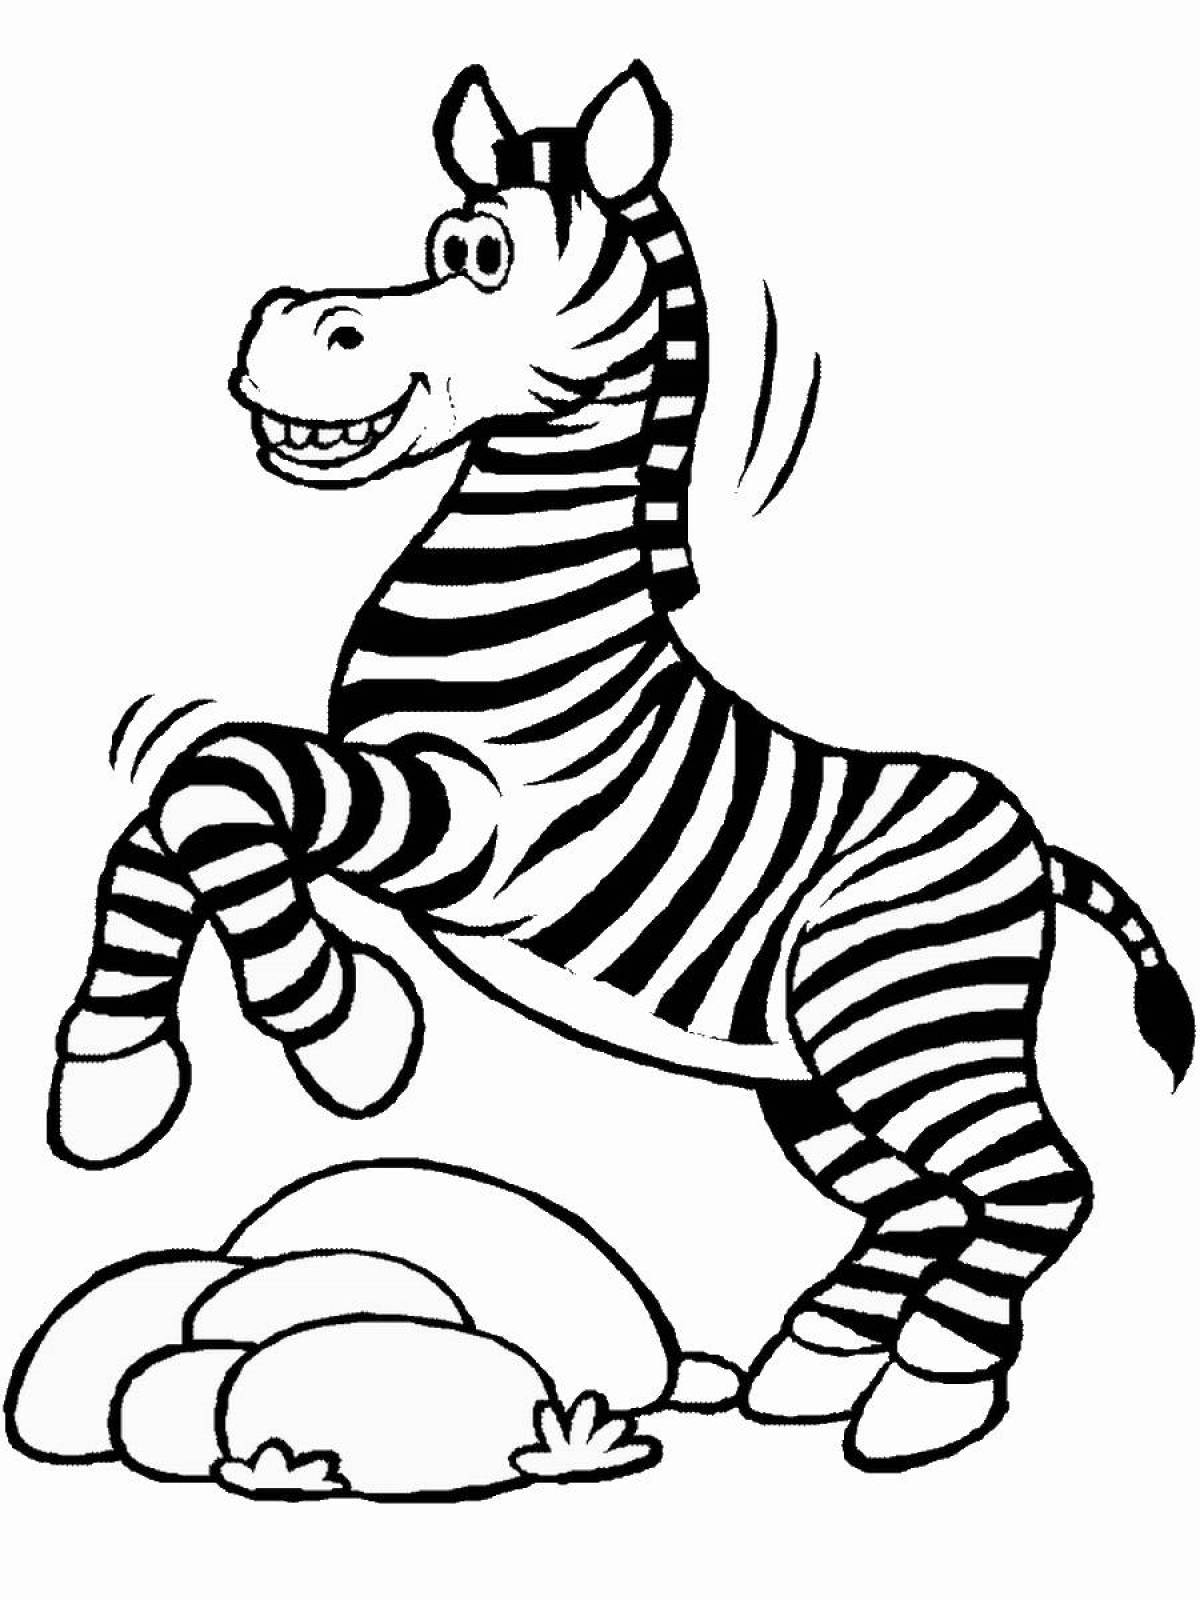 Развлекательная раскраска зебра для детей